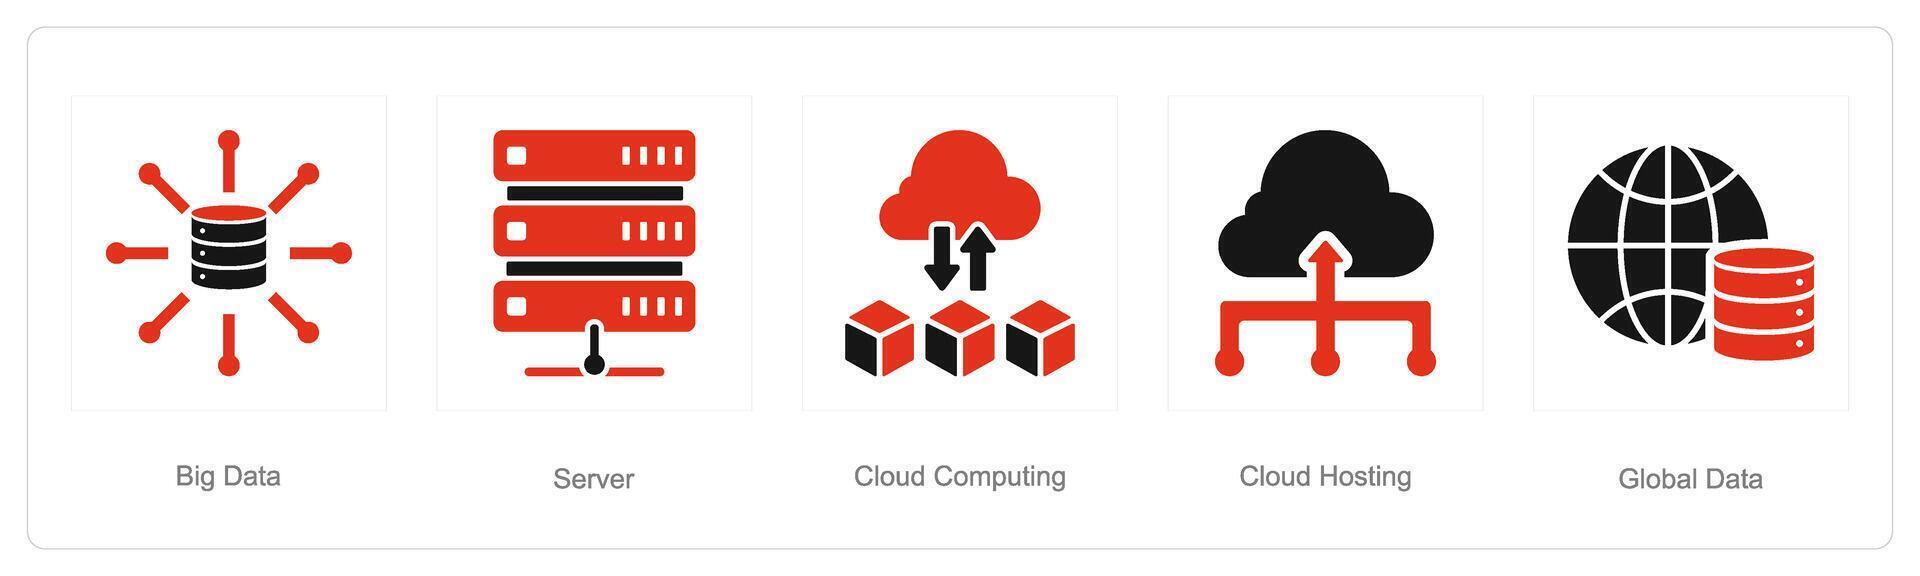 uma conjunto do 5 dados análise ícones Como grande dados, servidor, nuvem Informática vetor